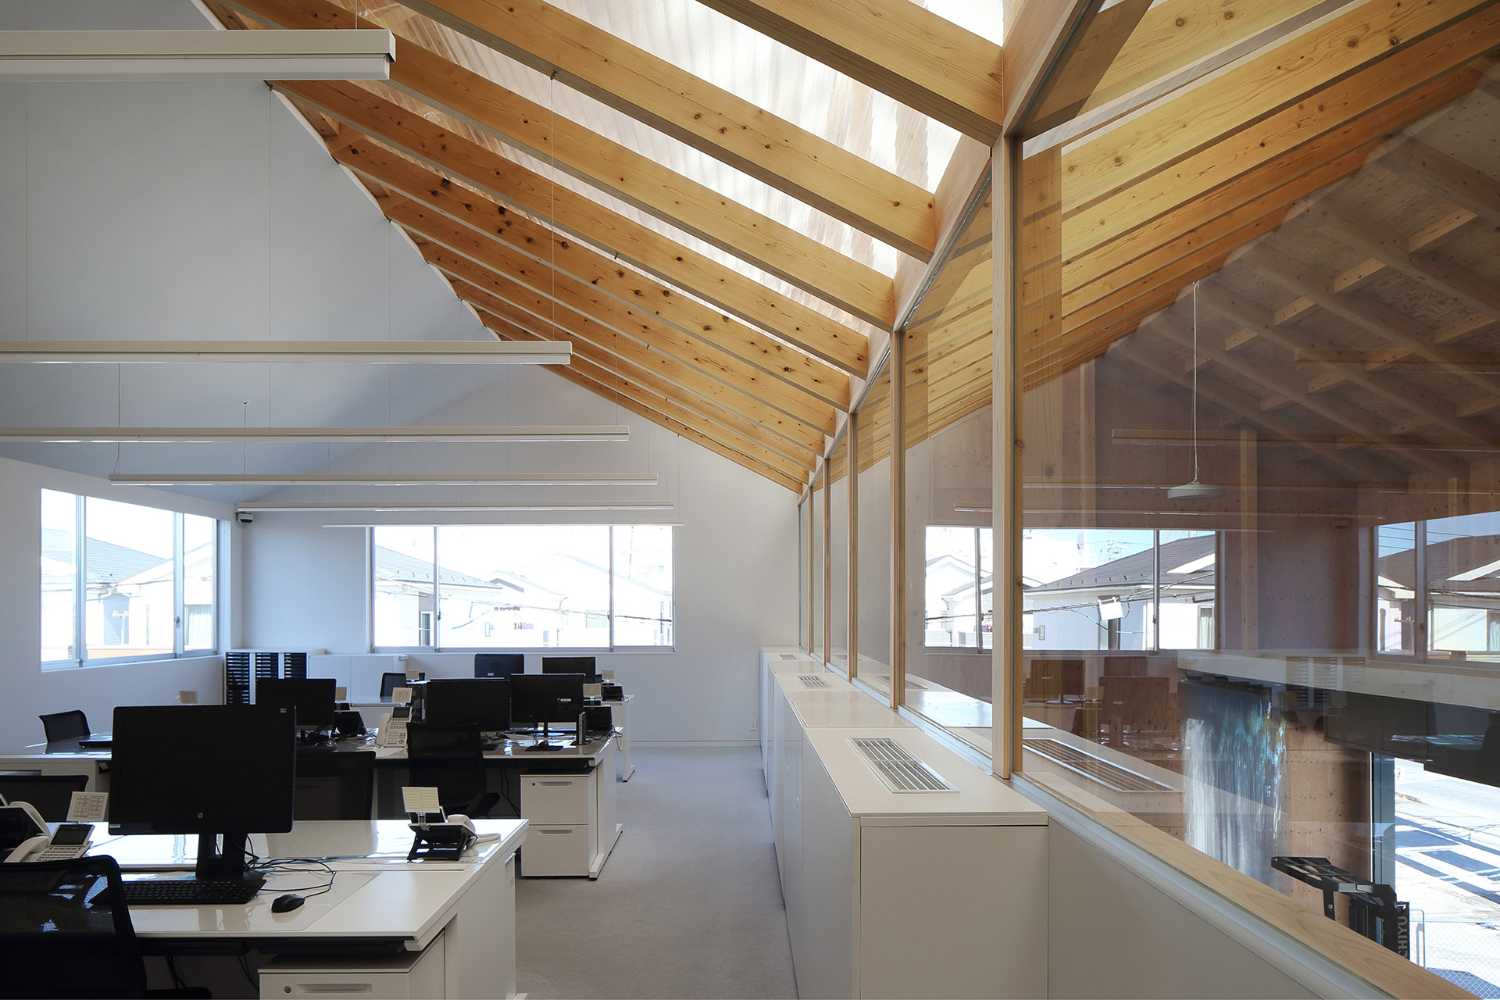 Ufficio con tetto in legno a timpano